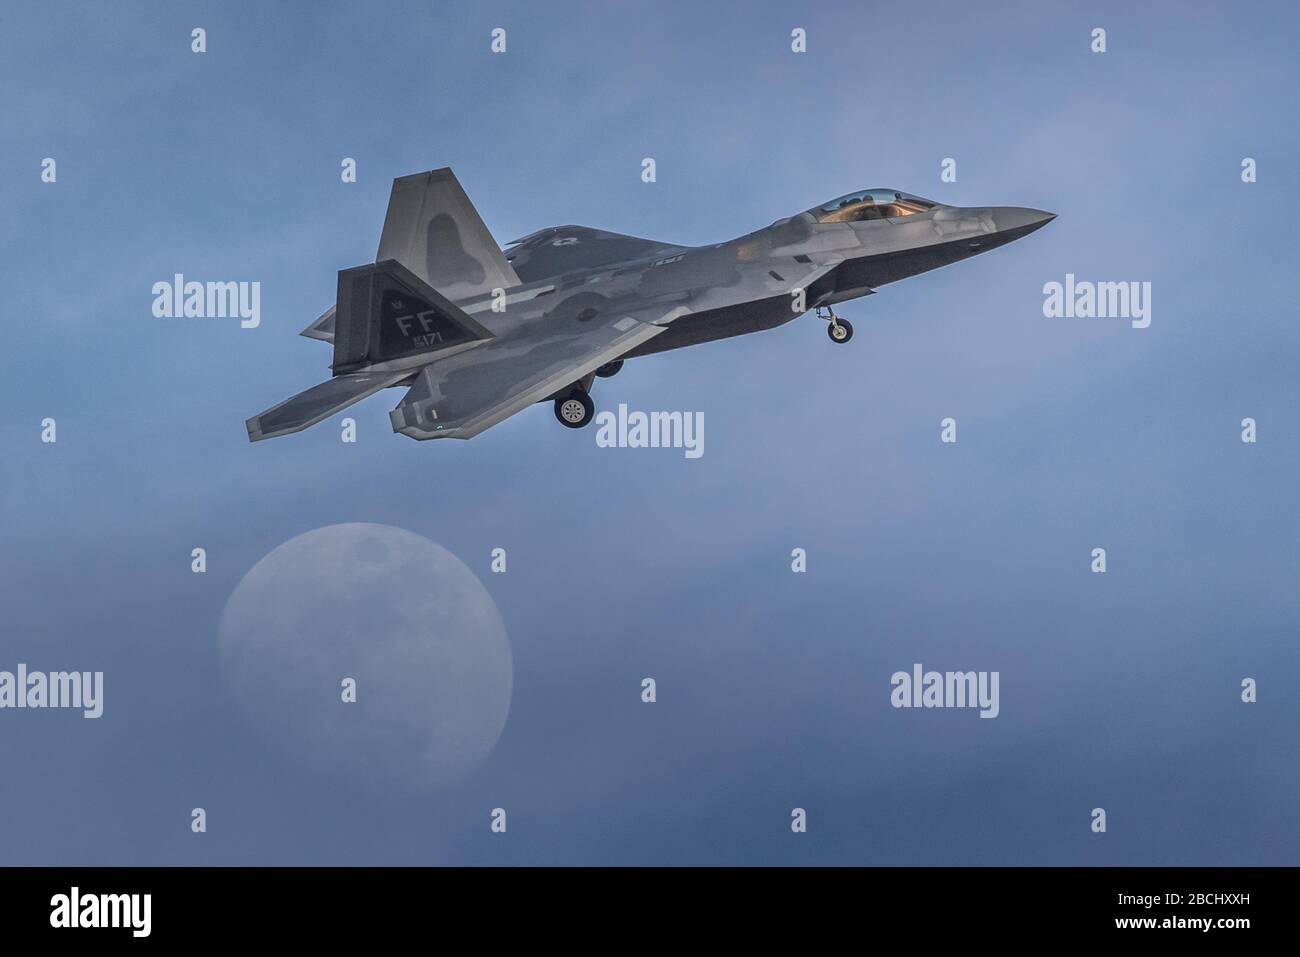 Boeing F-22 A Raptor, de l'armée de l'air des États-Unis, se charge de débarquer sur une lune presque pleine et un ciel bleu. Banque D'Images